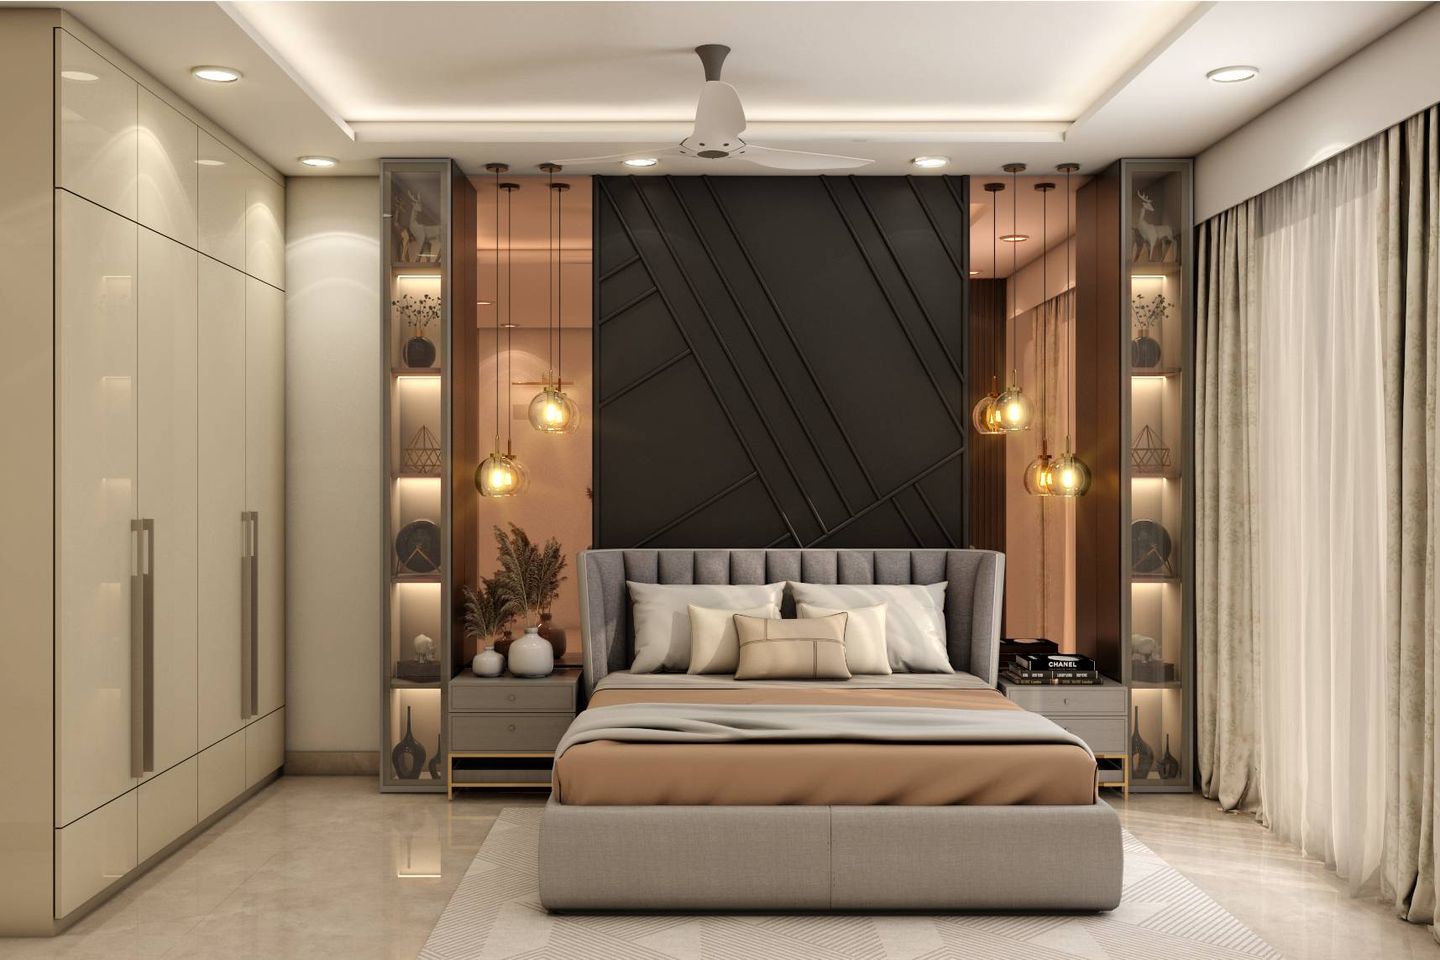 Master Bedroom Design With Black Backdrop - Livspace